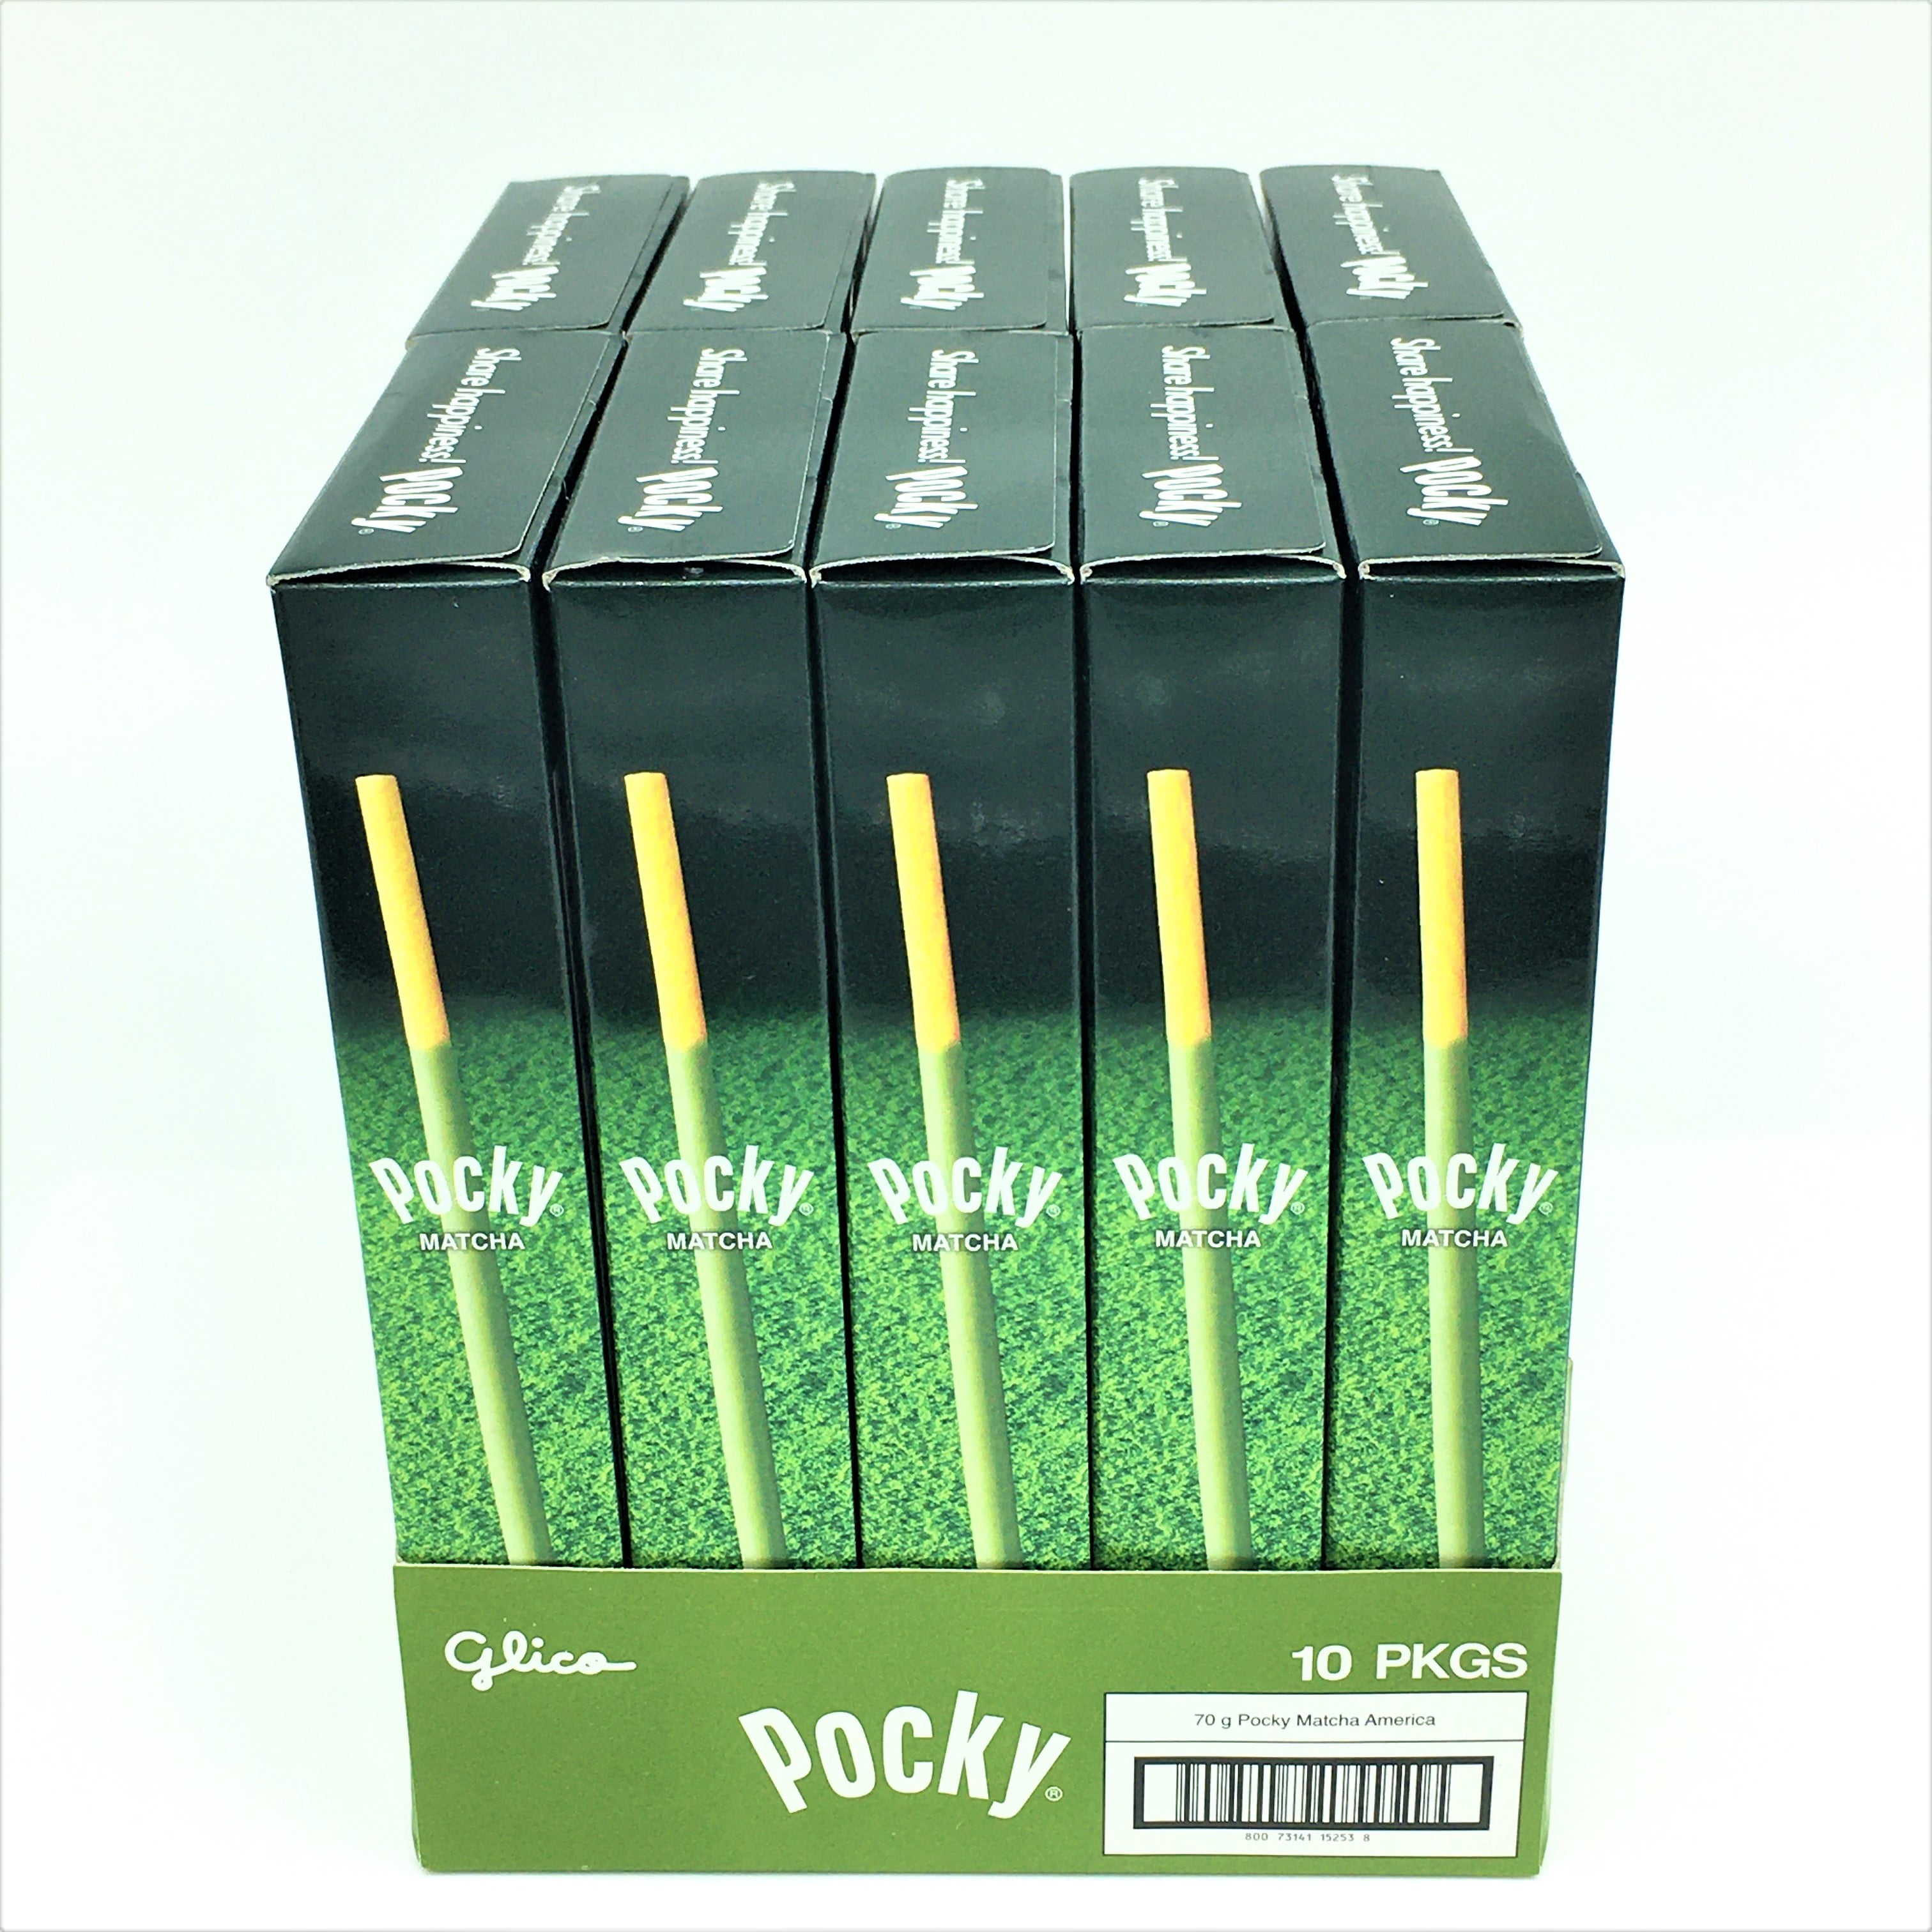 Glico Pocky - Original Chocolate 2.47oz - Matcha Time Gift Shop